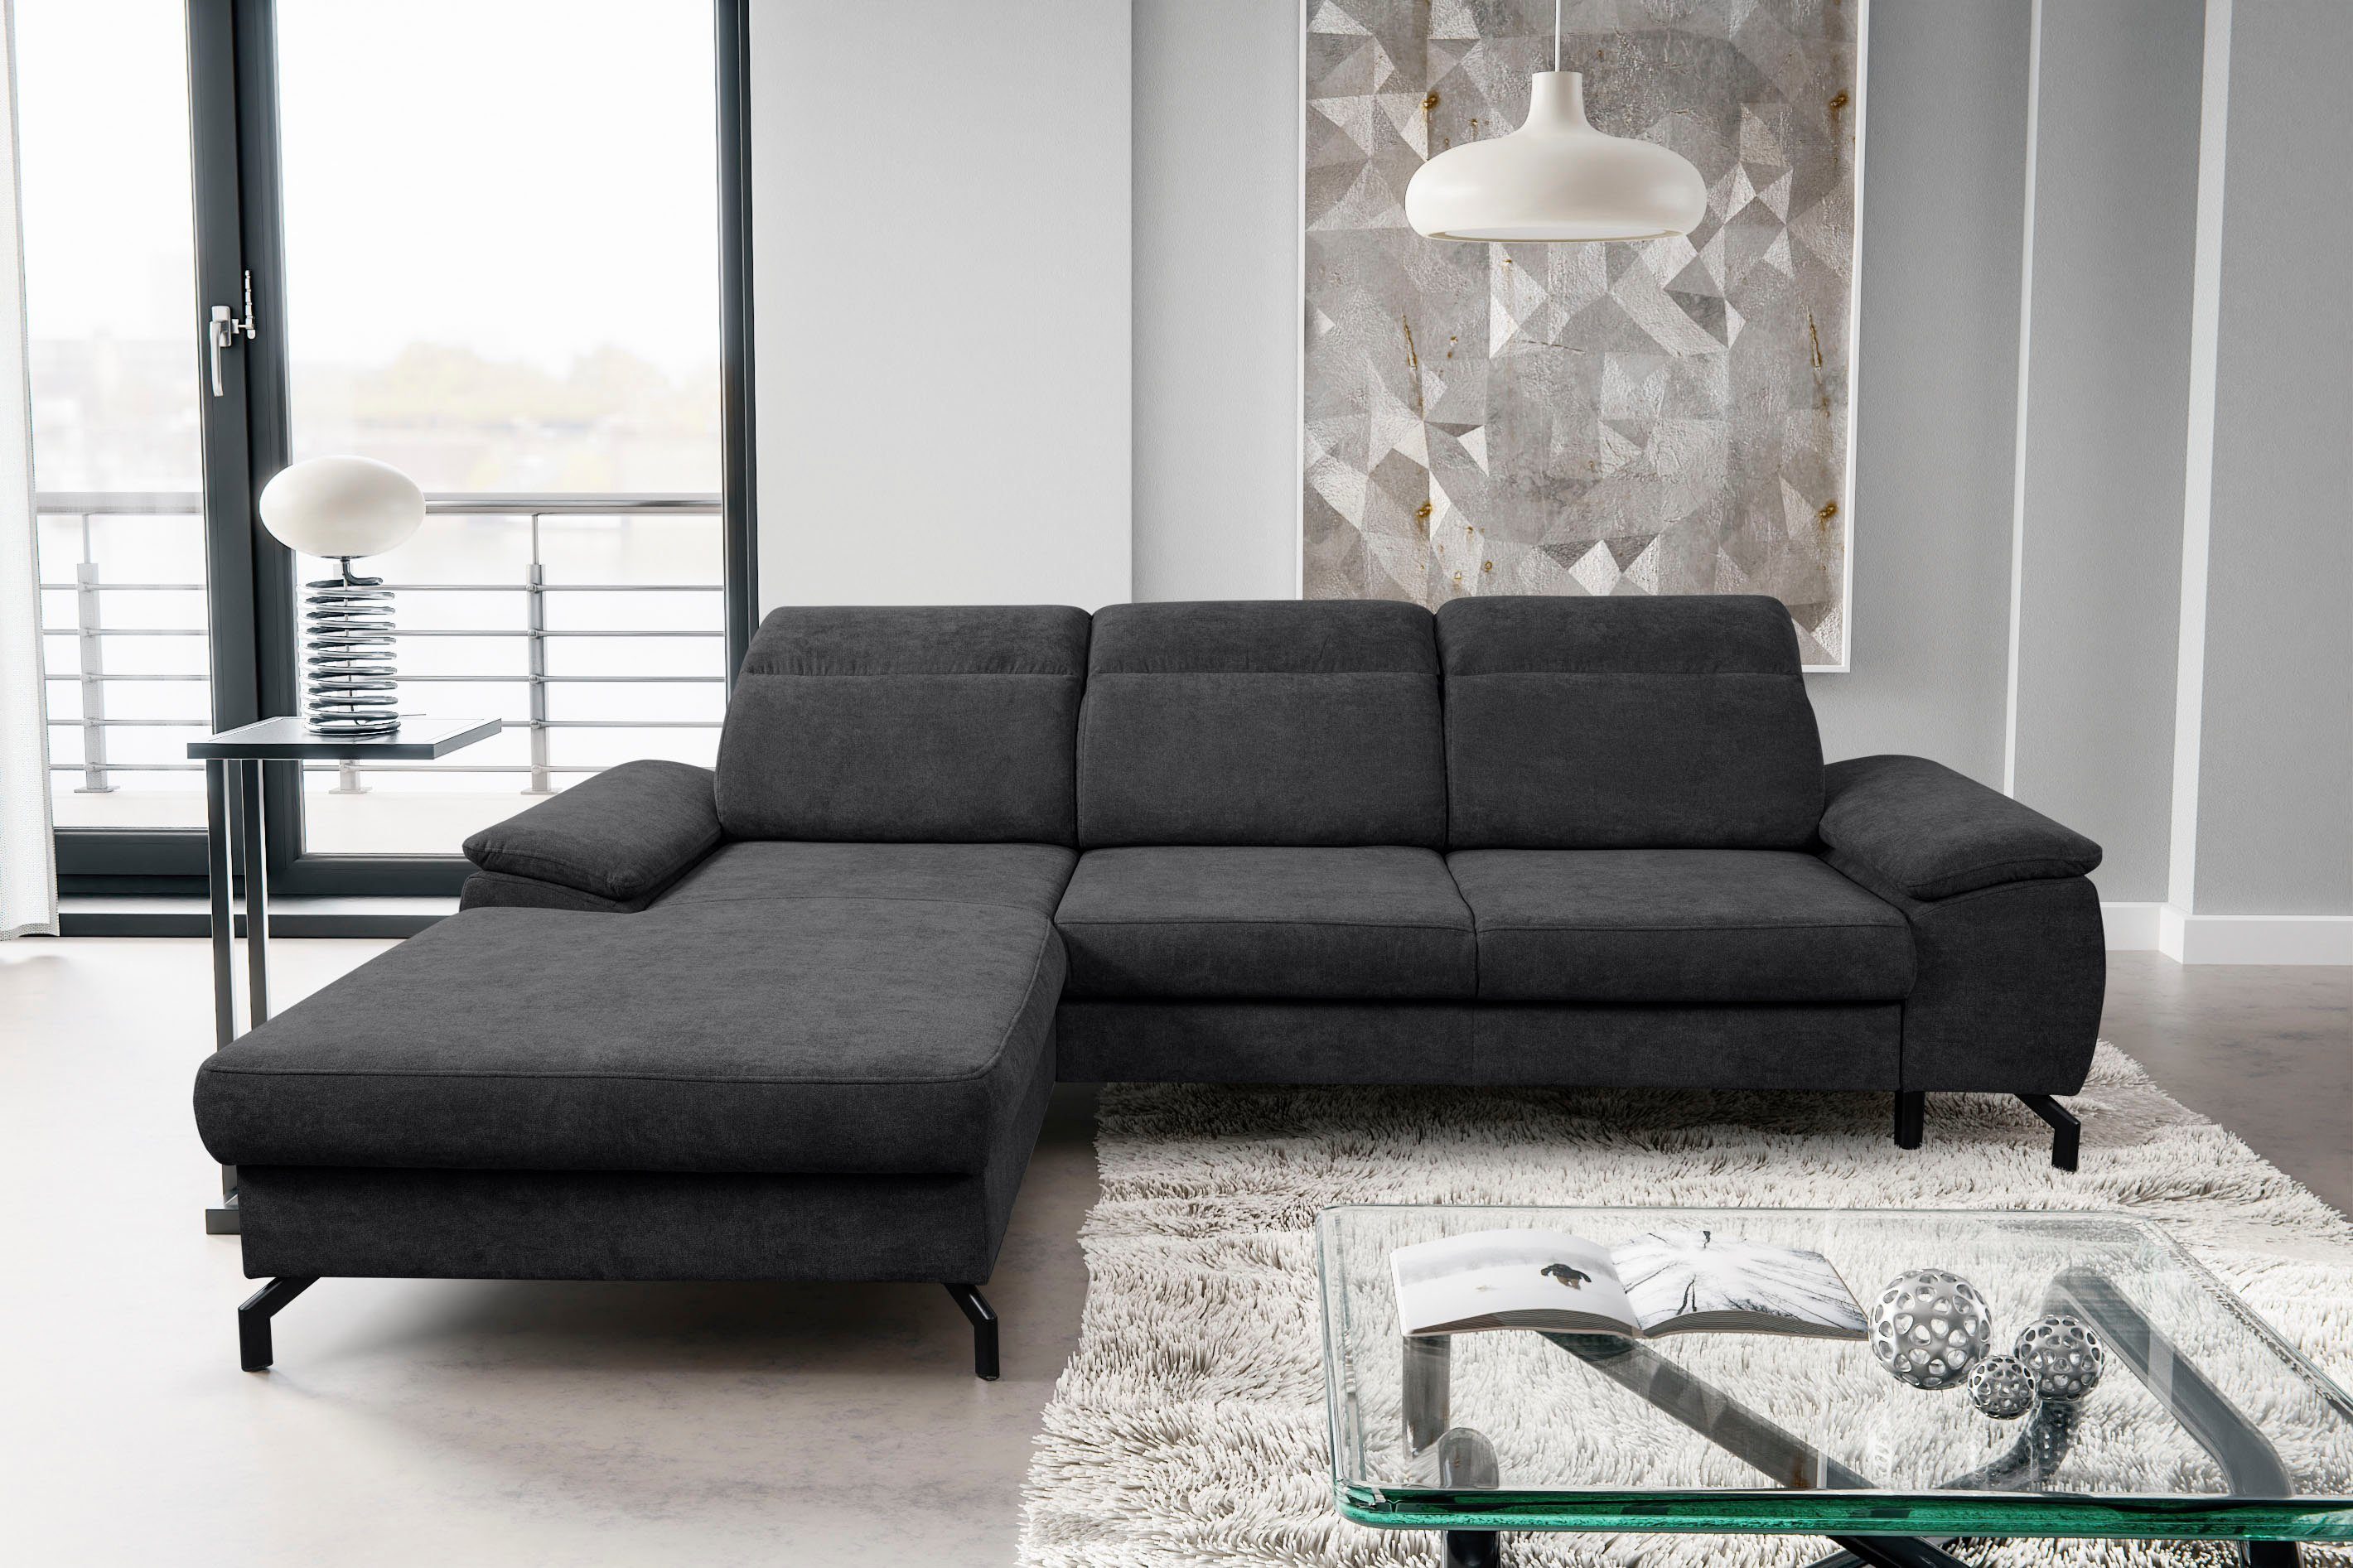 WERK2 Ecksofa Panama L-Form, Modernes Sofa mit Schlaffunktion, Bettkasten, Kopfteile verstellbar